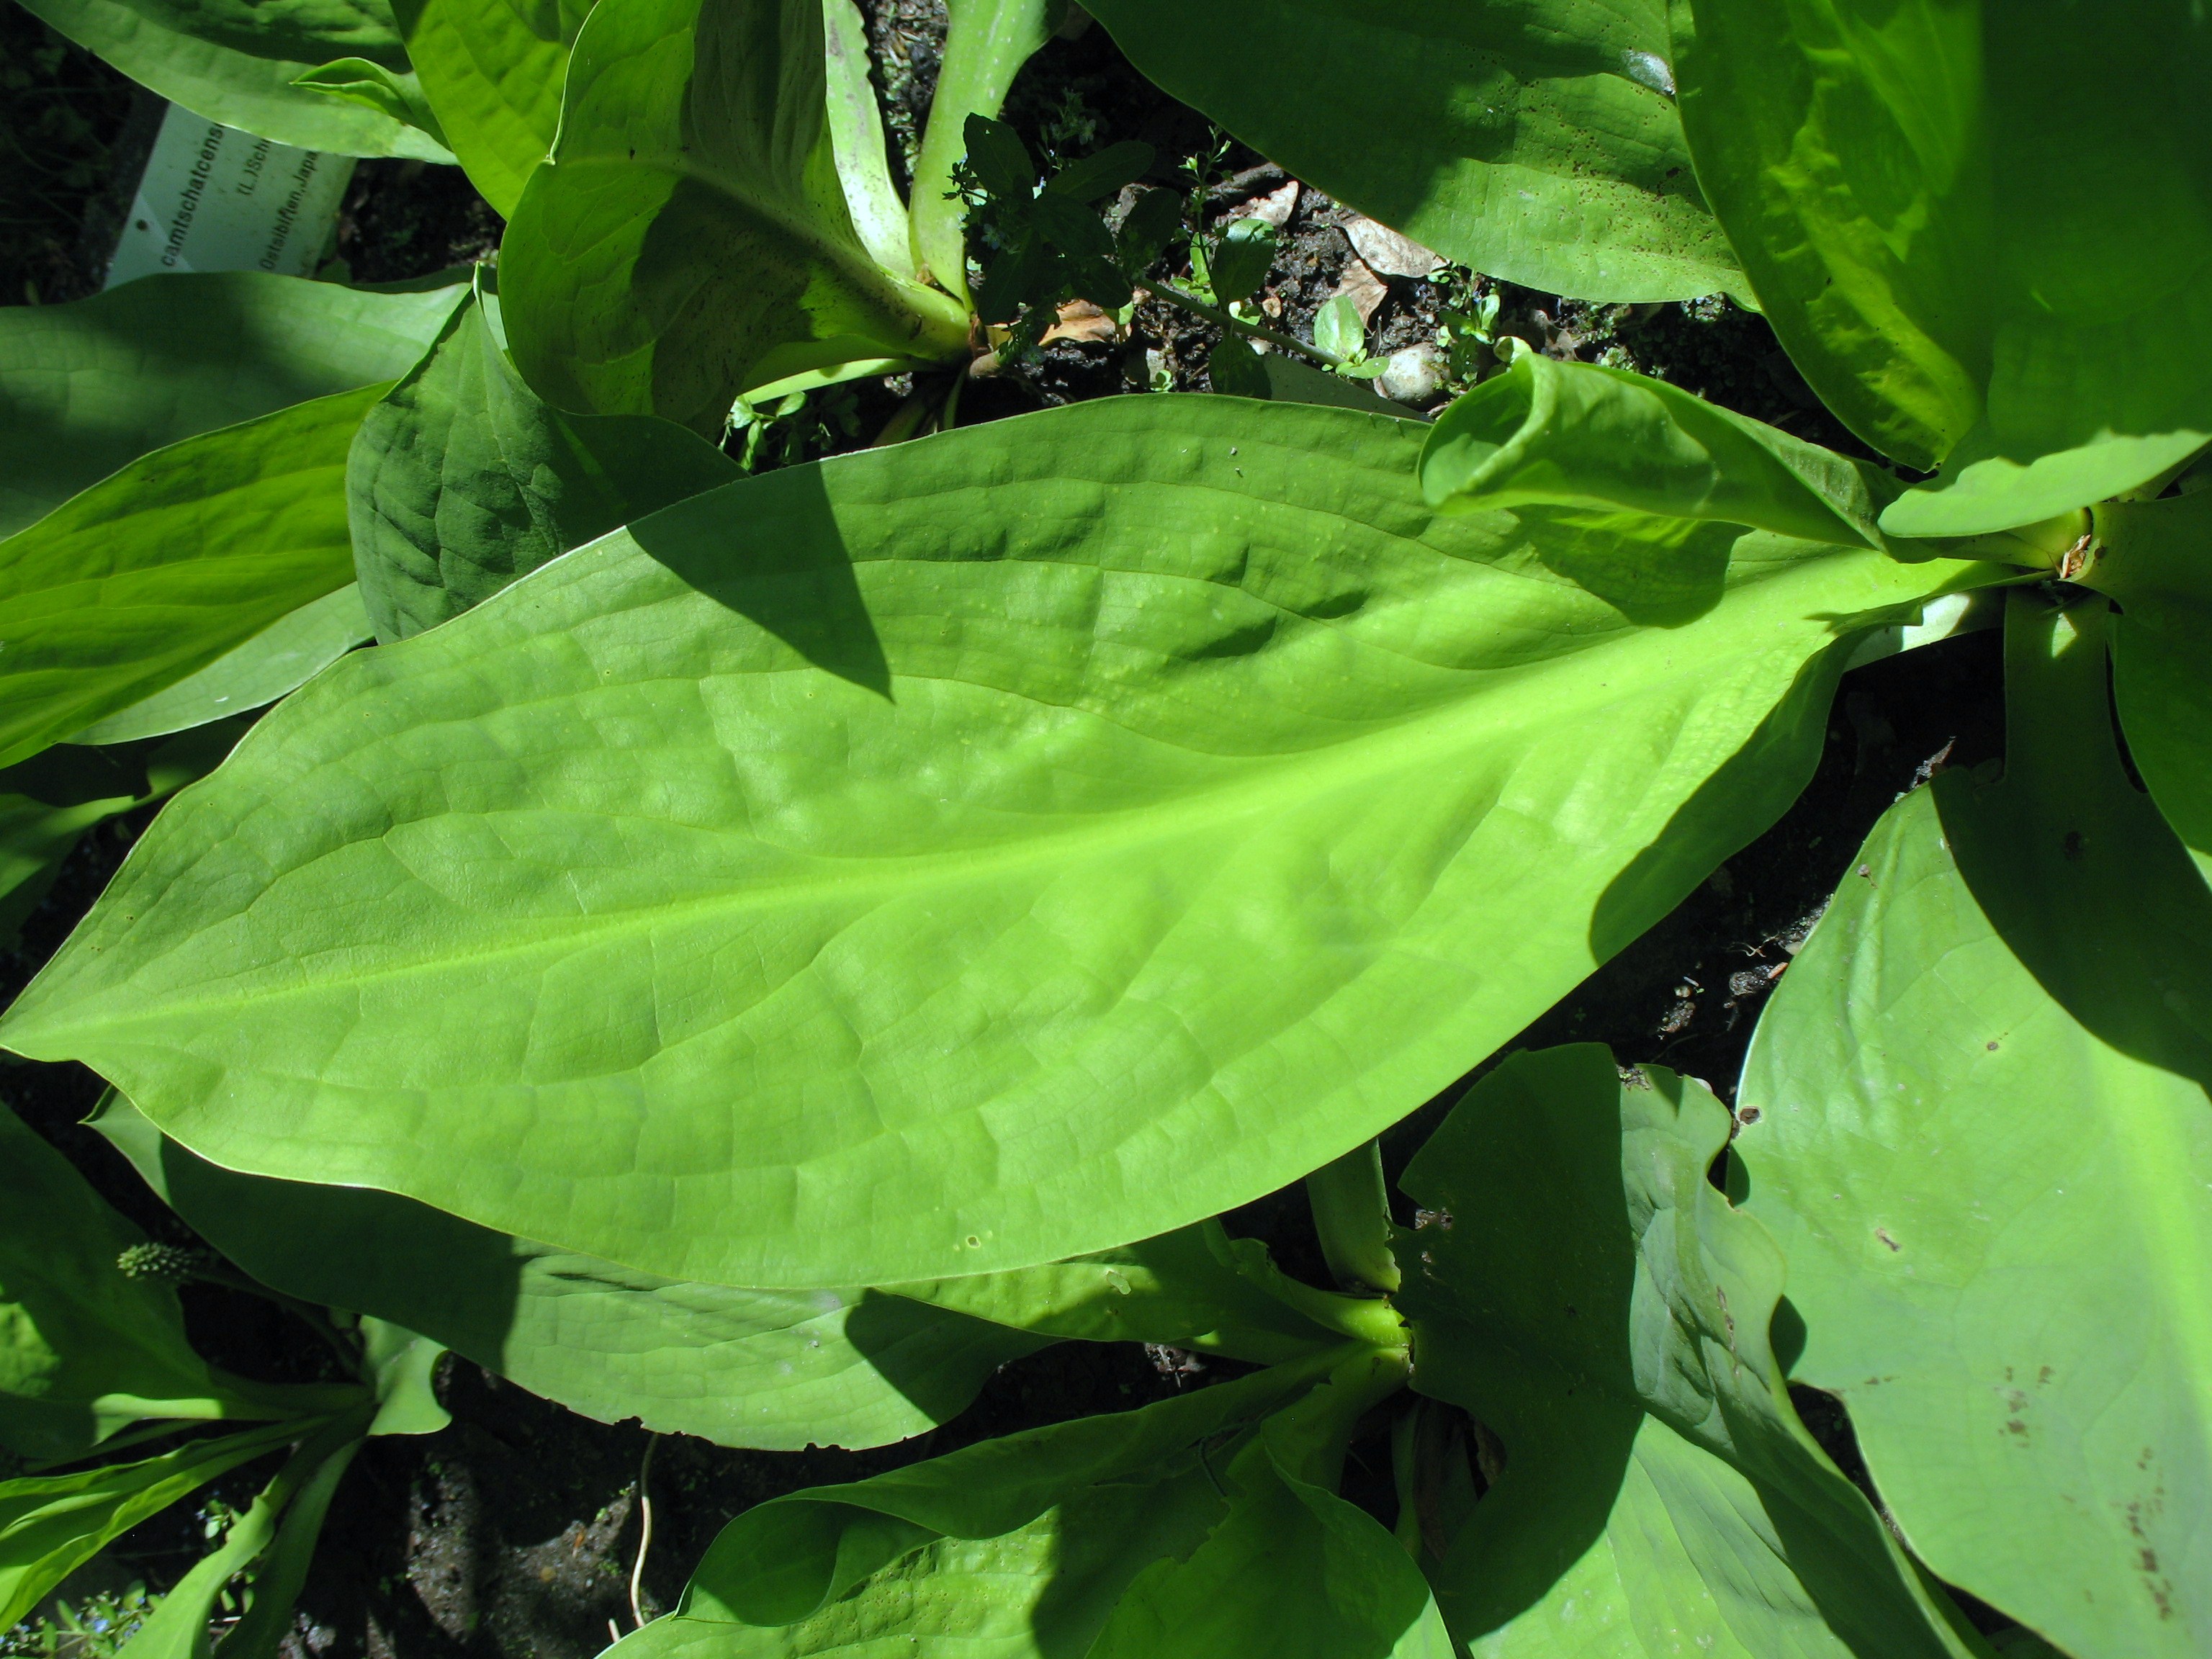 Lysichitum spp. / Skunk Cabbage, Swamp Lantern